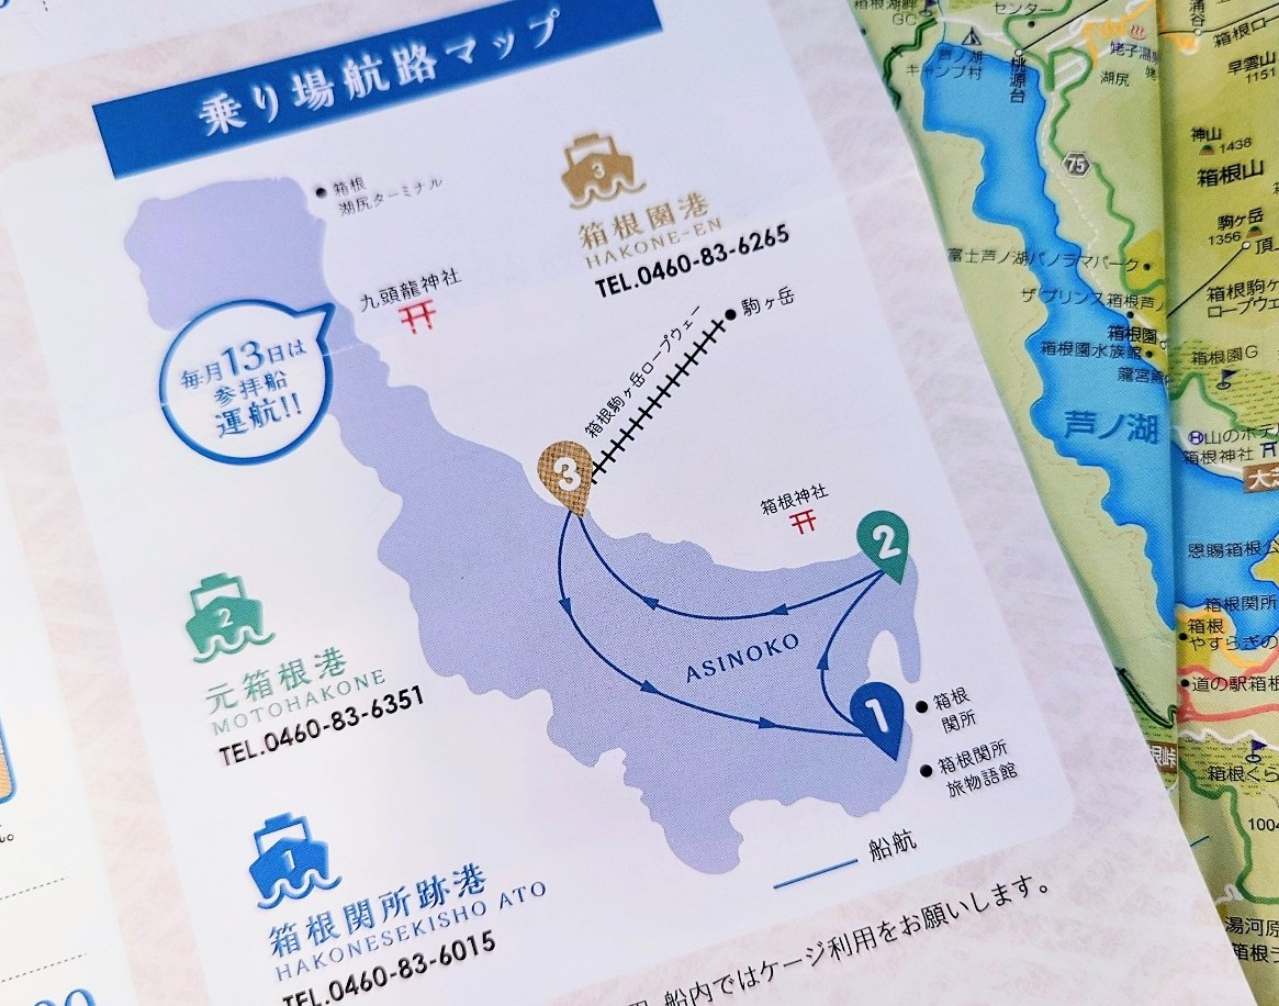 神奈川県足柄下郡・「箱根遊船 SORAKAZE」航路マップ